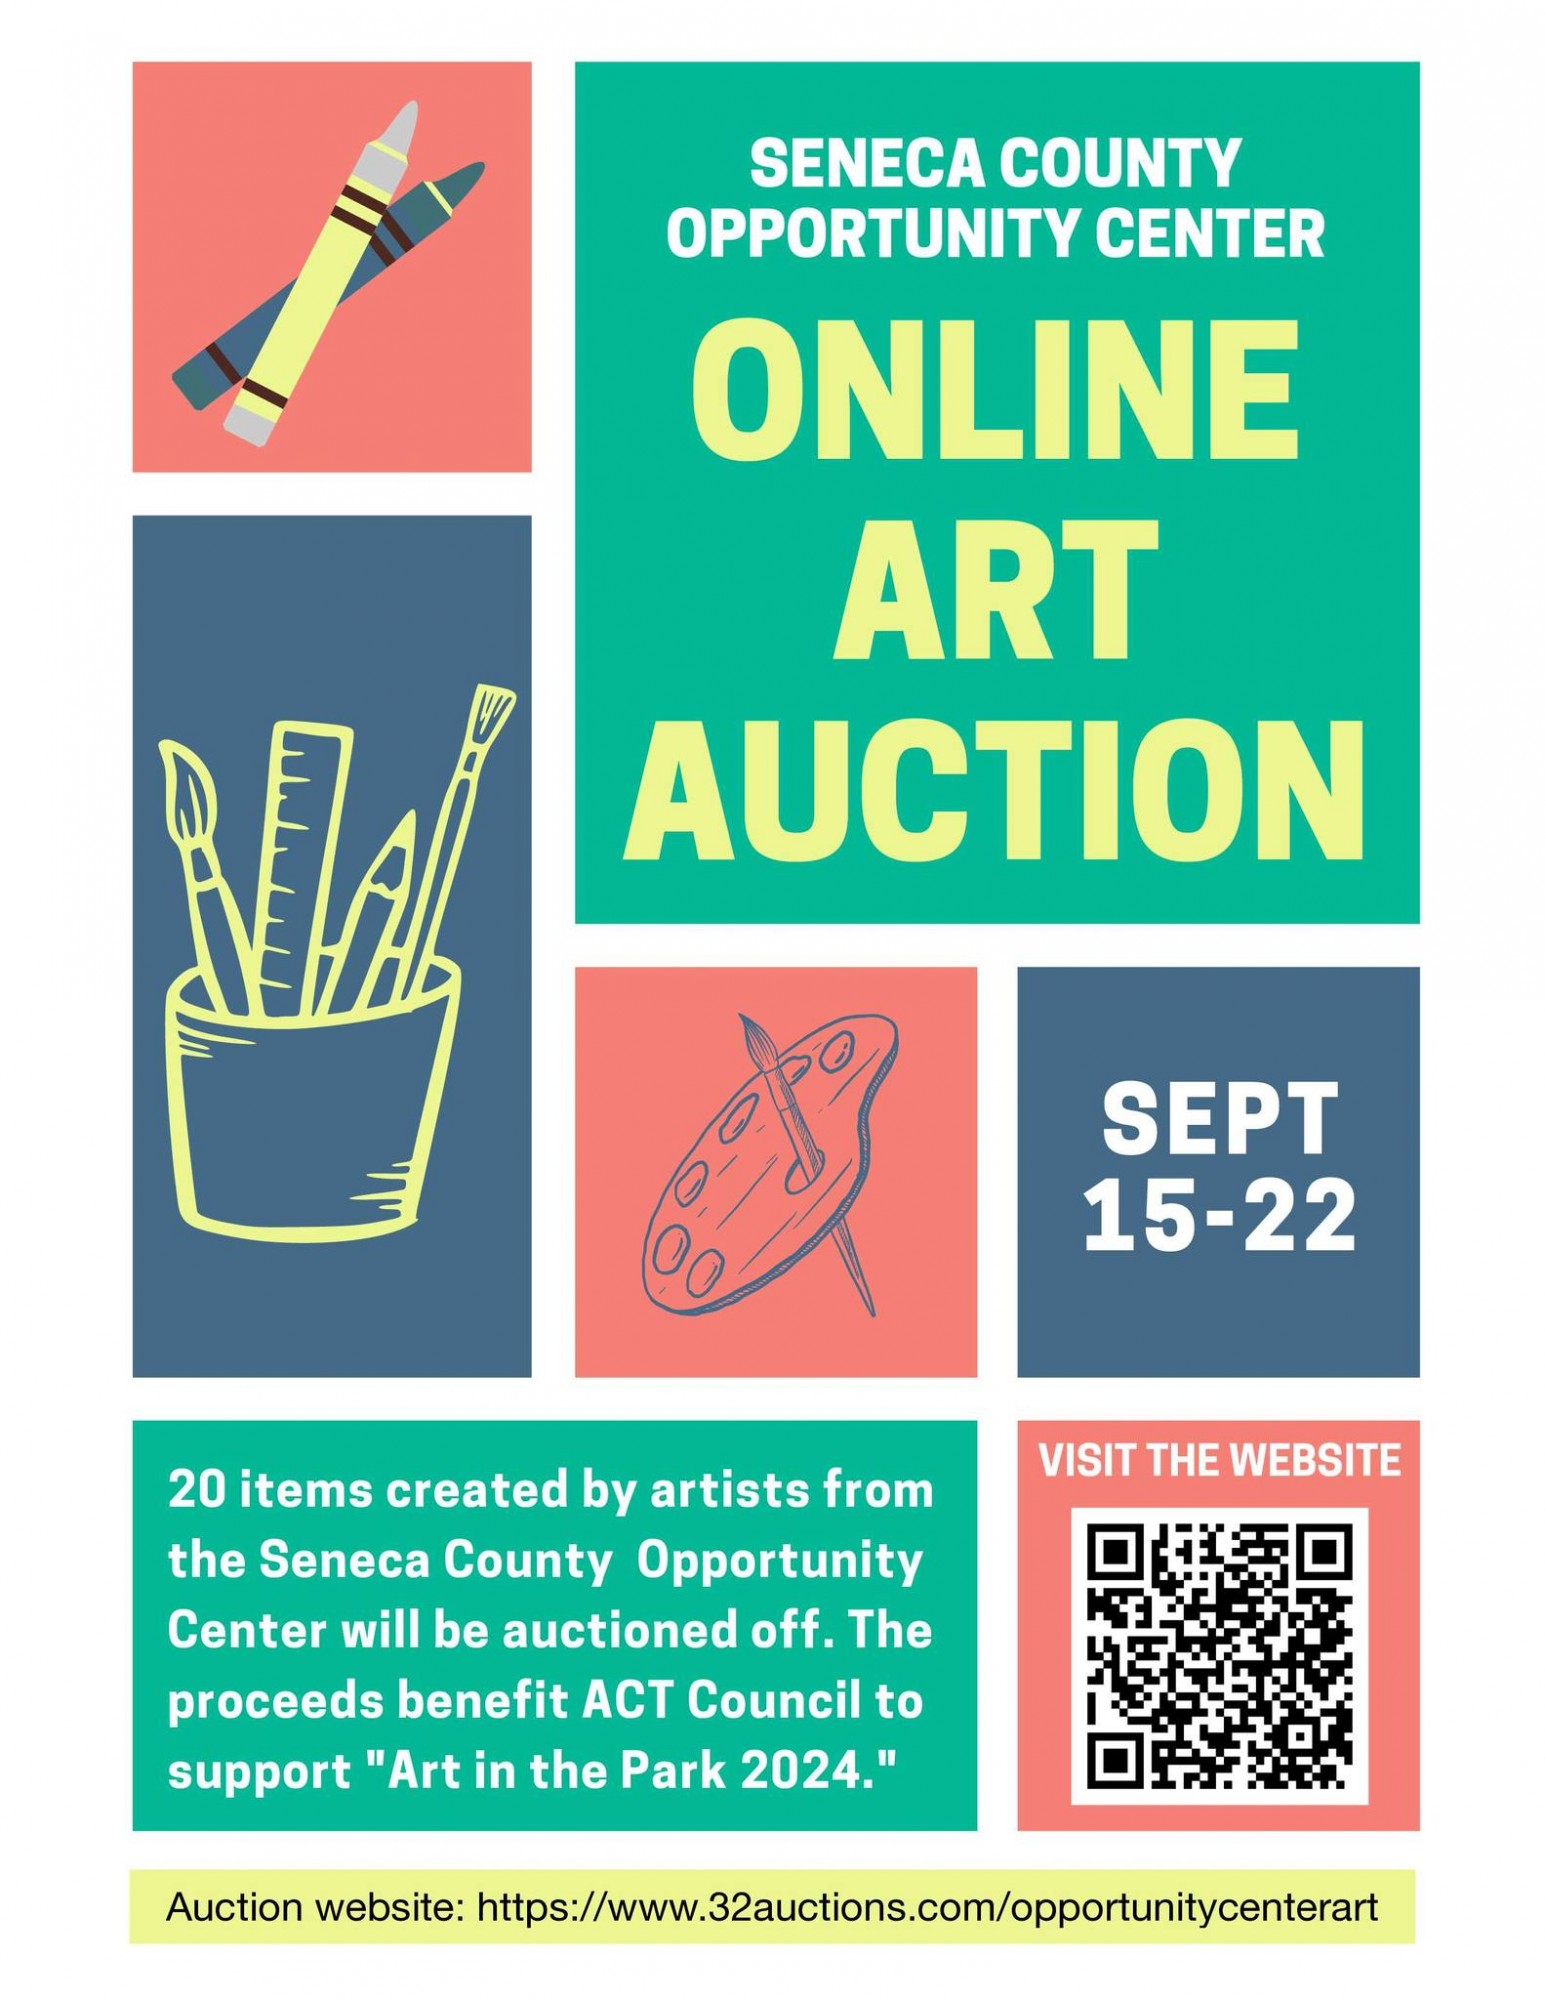 Opportunity Center Online Art Auction